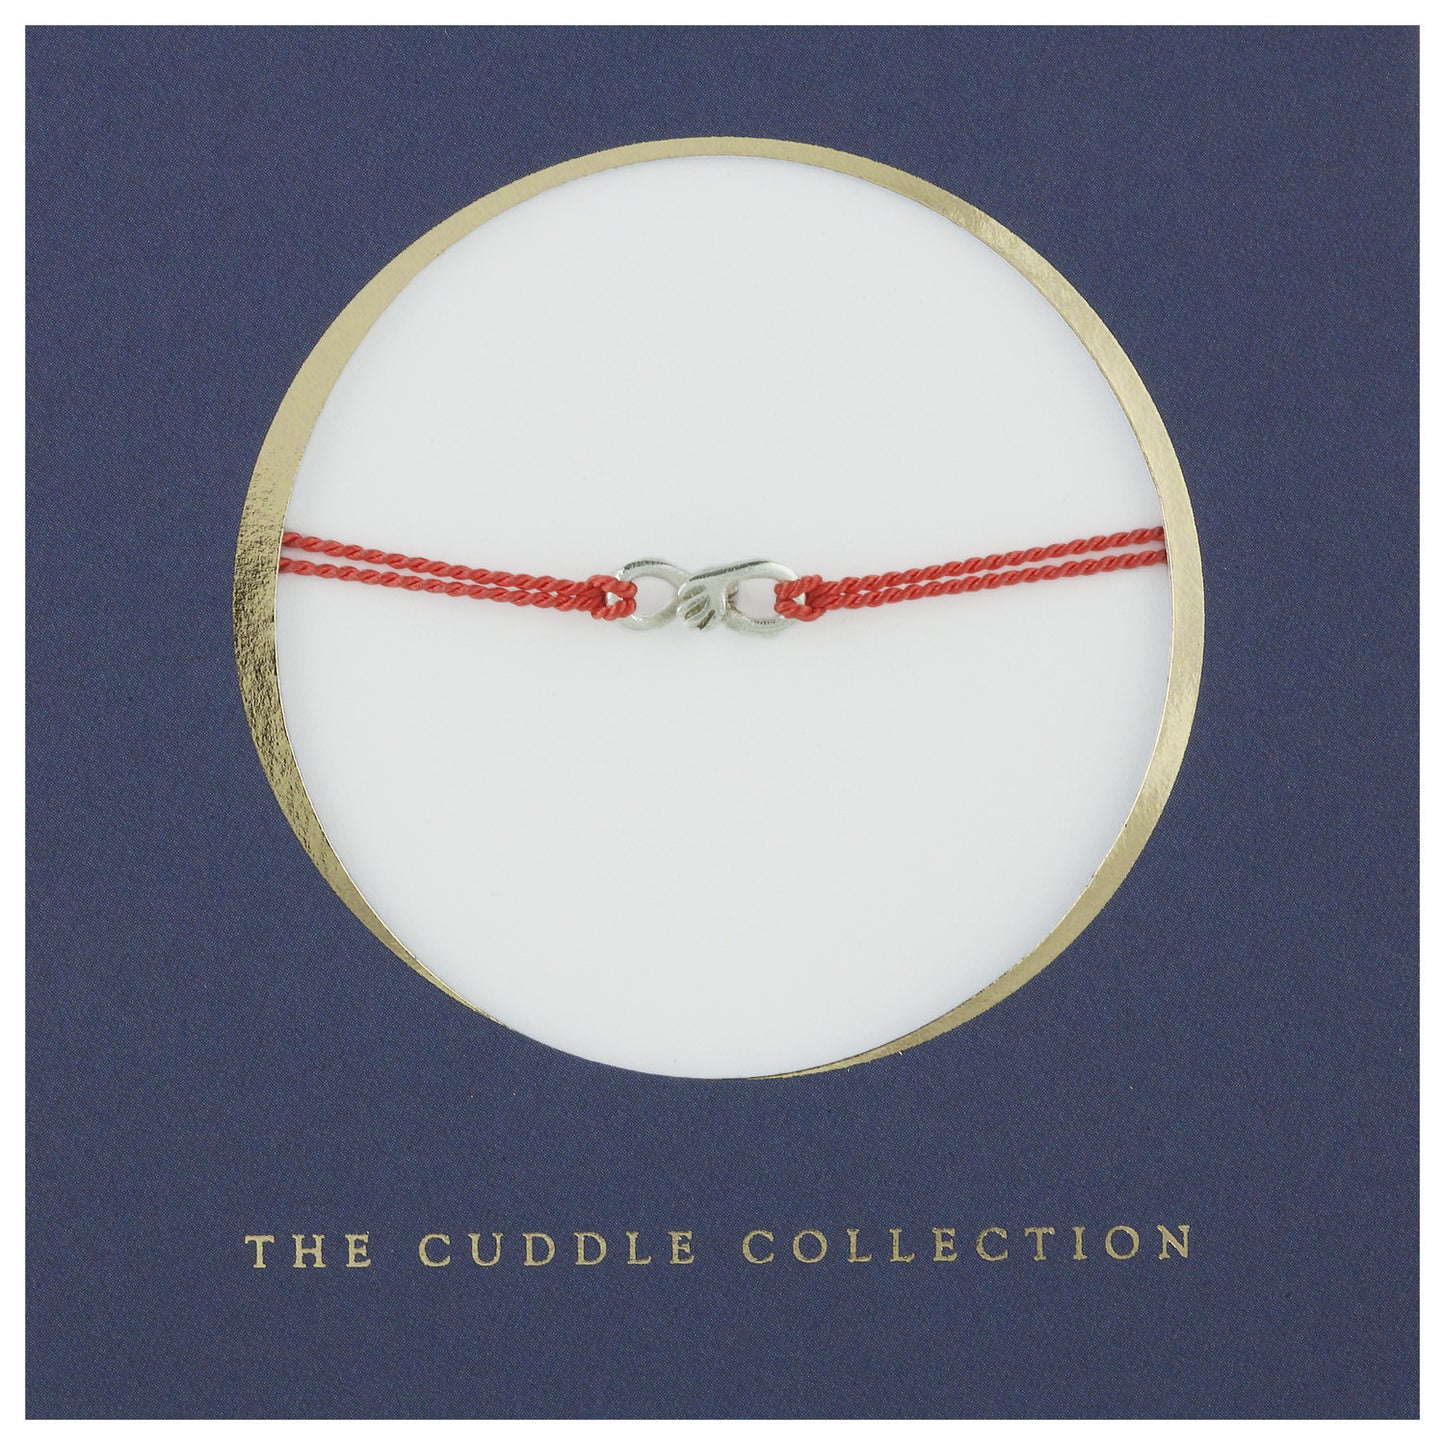 Cuddle charm bracelet on Grey silk thread